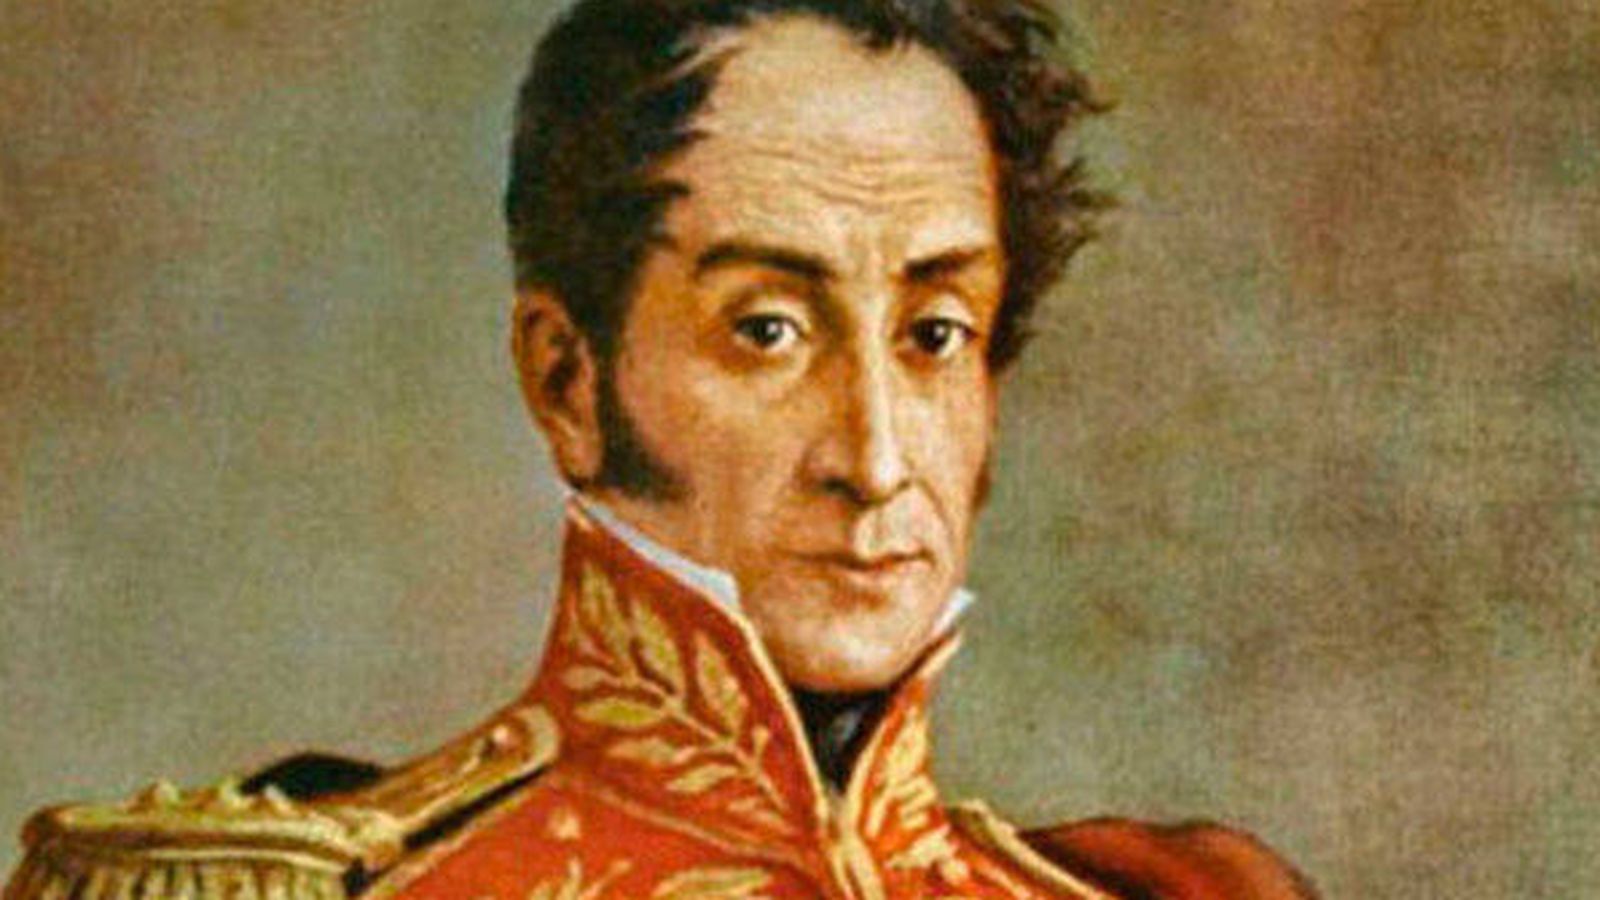 Historia: Simón Bolívar, el falso mito del héroe y libertador